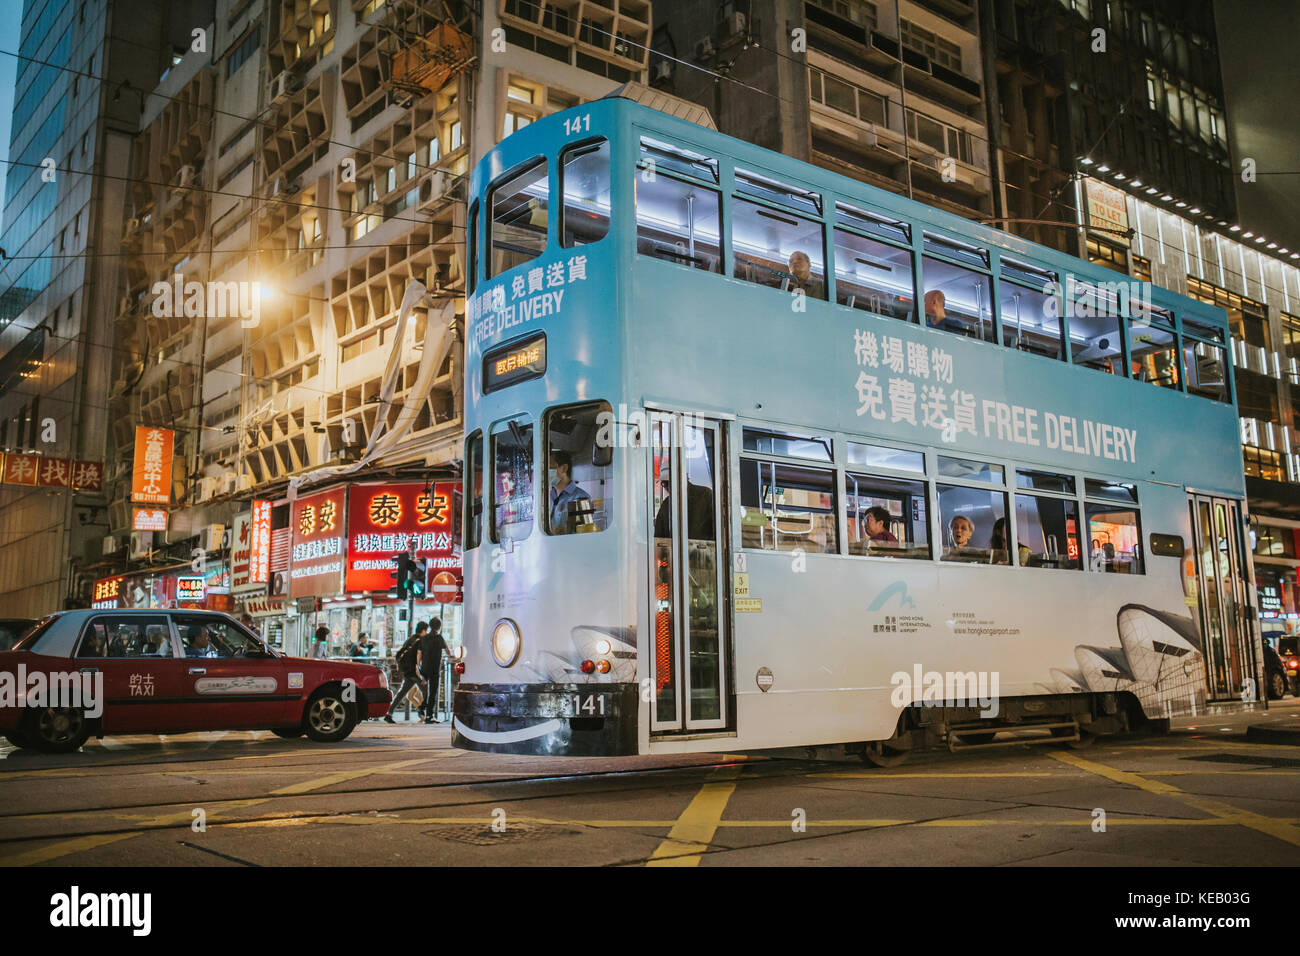 Hong Kong - 17 October 2017: Tramways on the streets of Hong Kong Island. Stock Photo